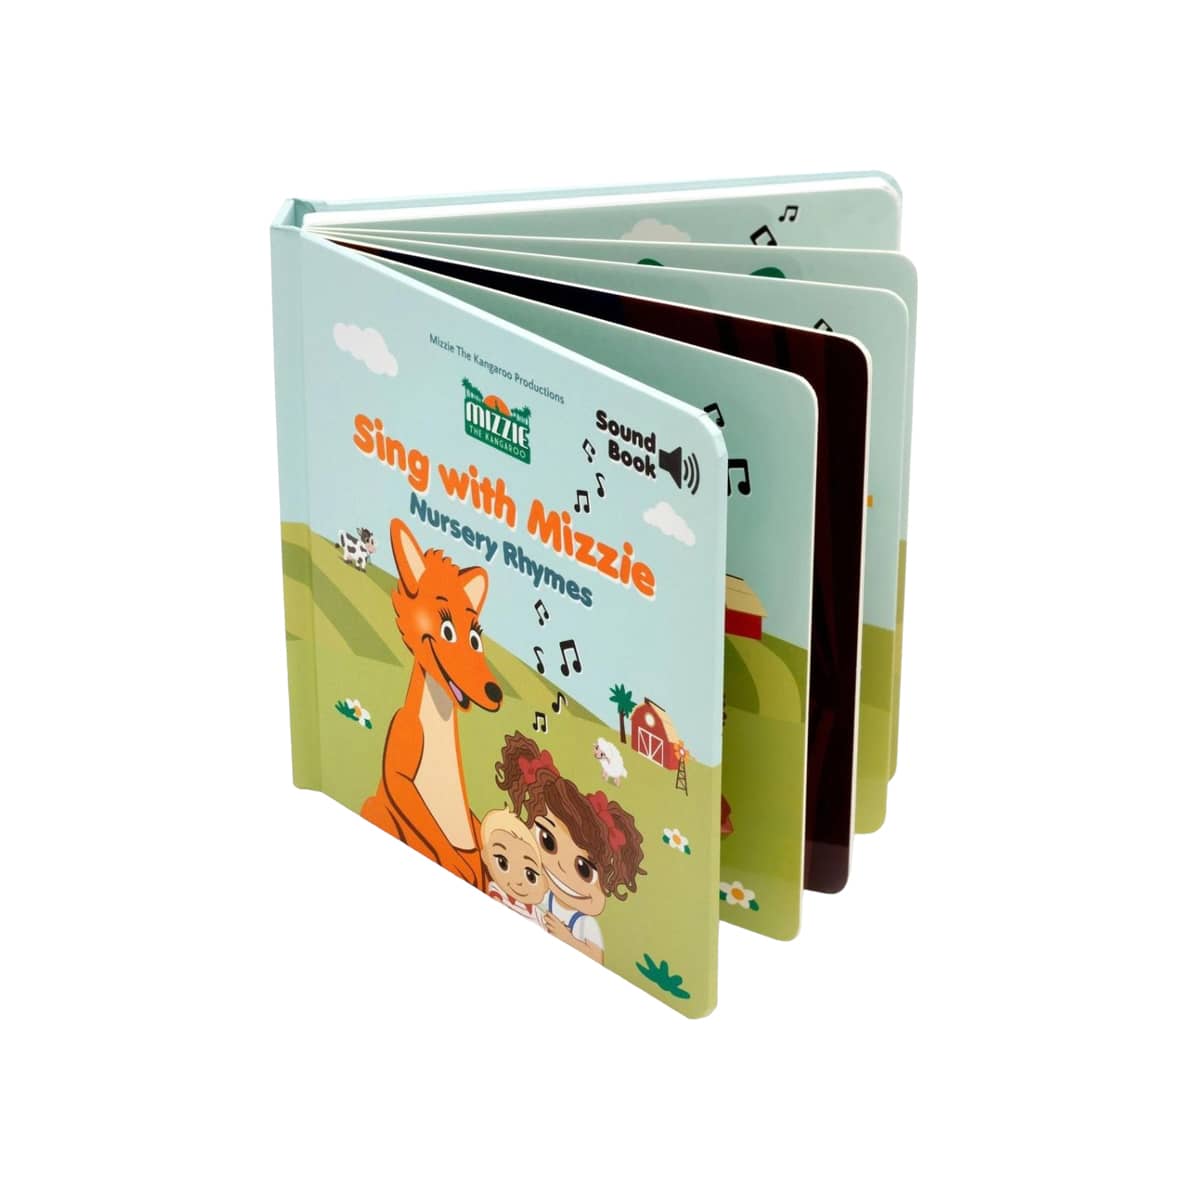 Mizzie the Kangaroo - Sing with Mizzie Sound Book - Nursery Rhymes